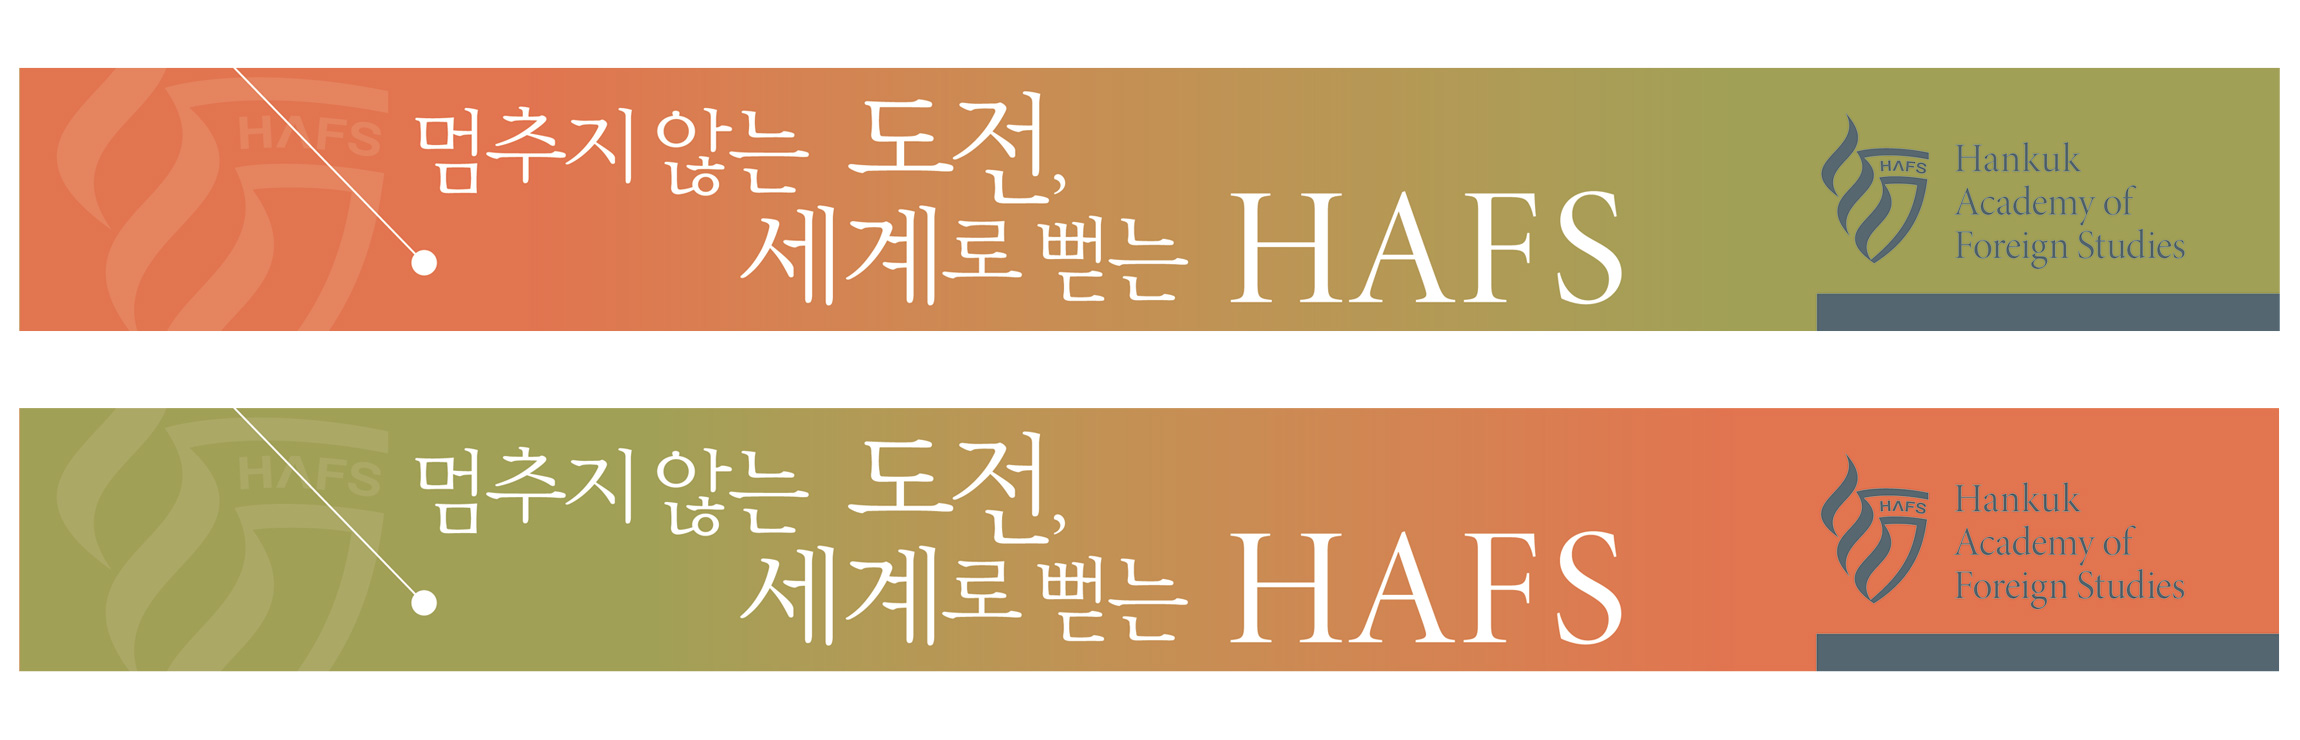 HAFS HAFS Branding & Identity hafs-placard-1.jpg